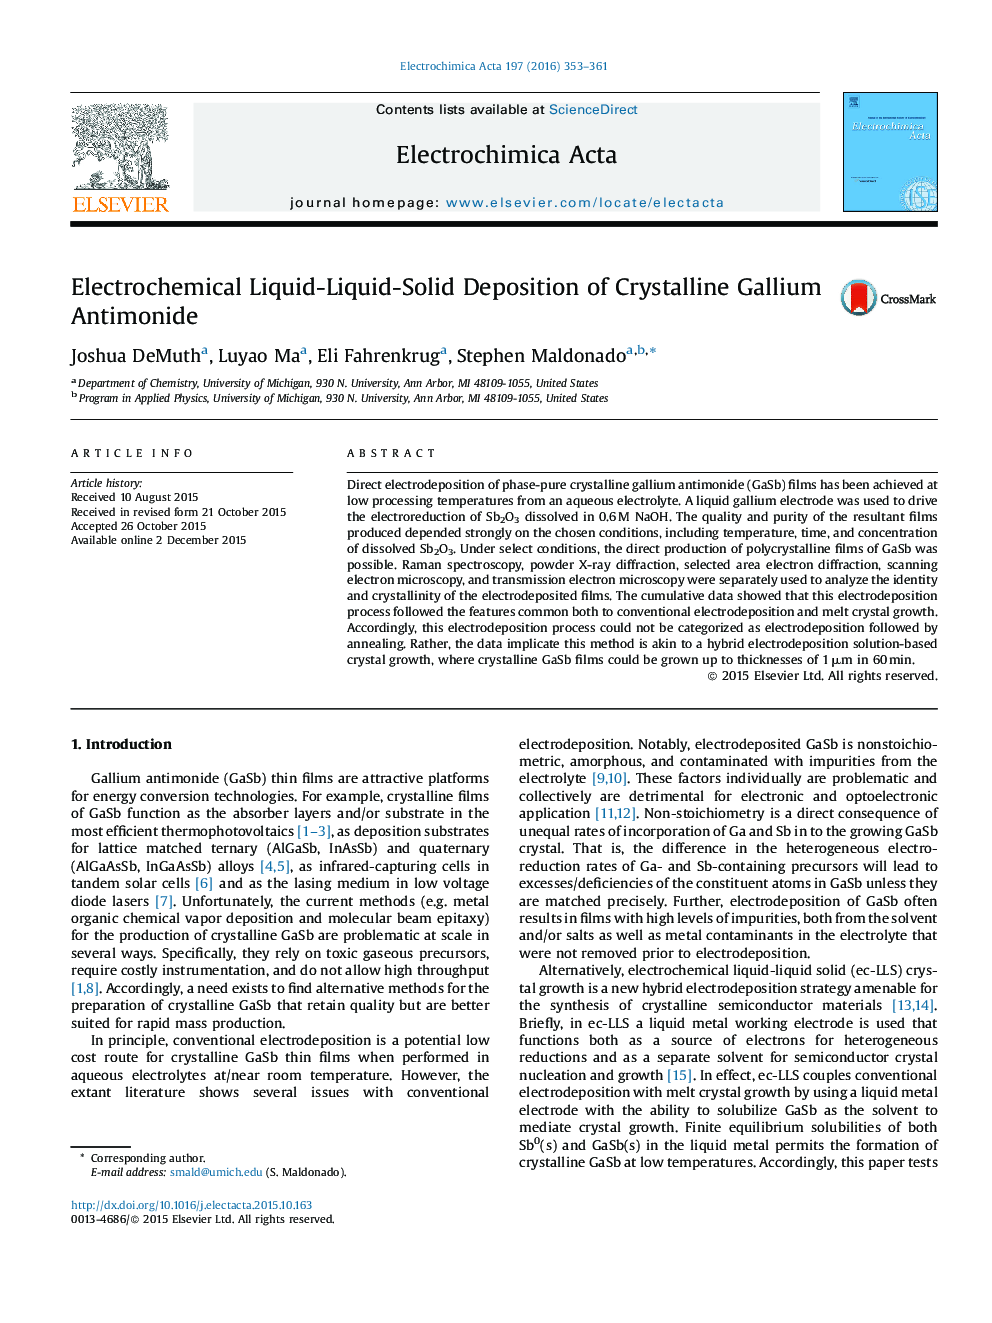 Electrochemical Liquid-Liquid-Solid Deposition of Crystalline Gallium Antimonide